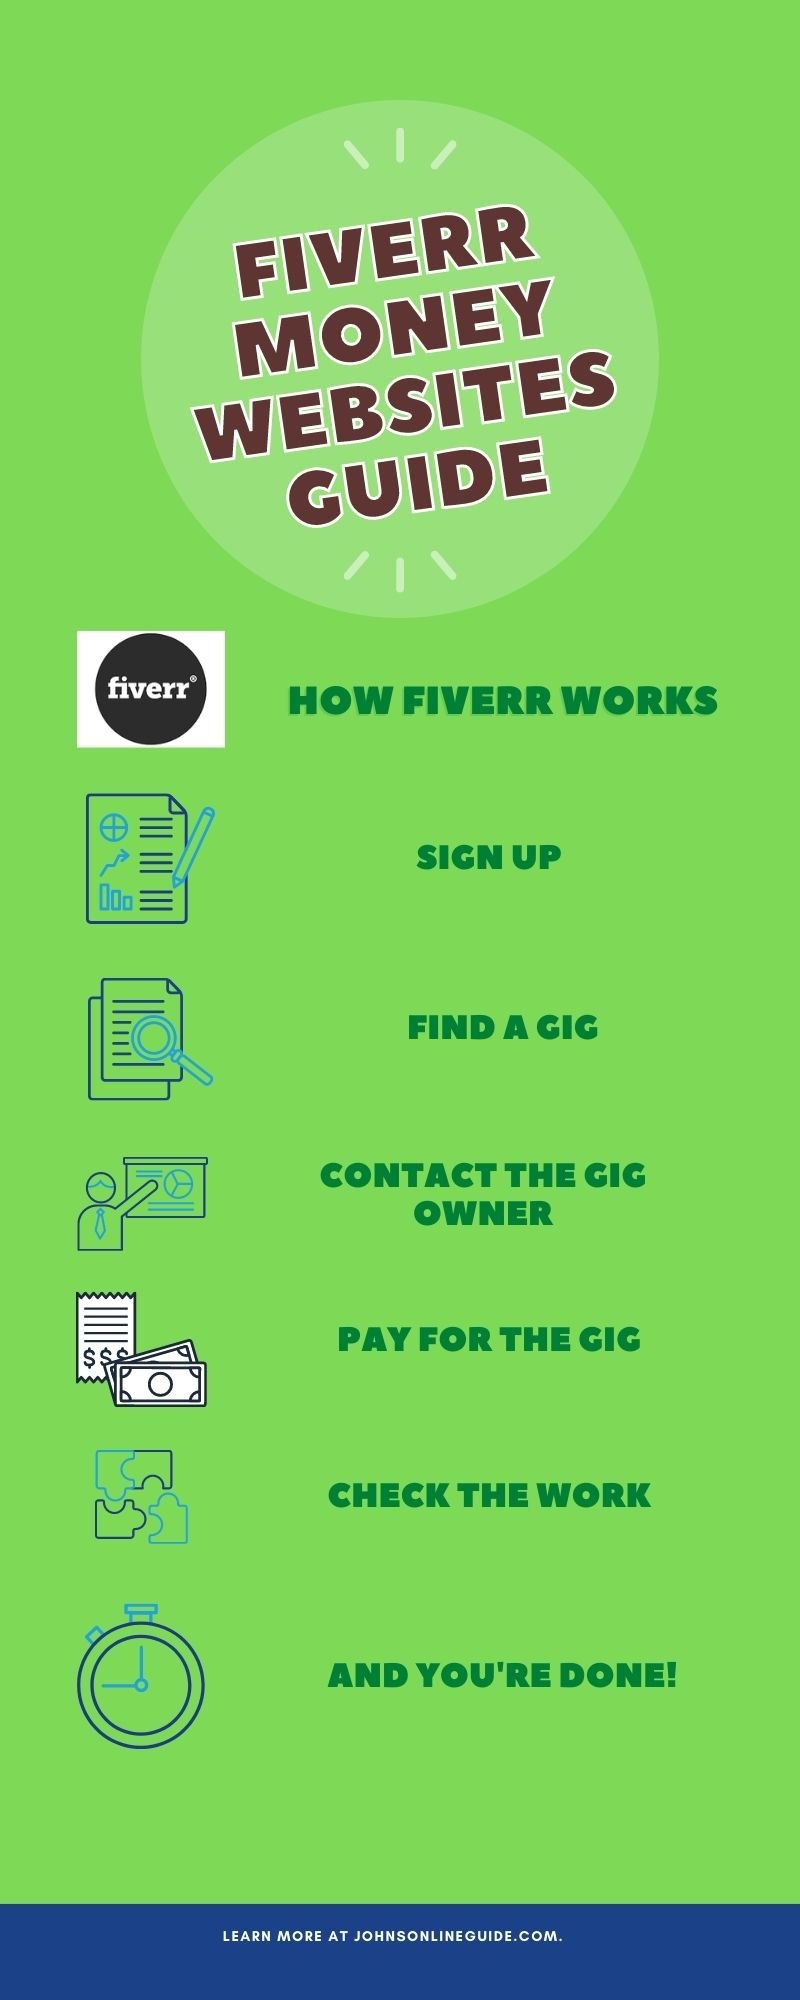 Fiverr Money Websites